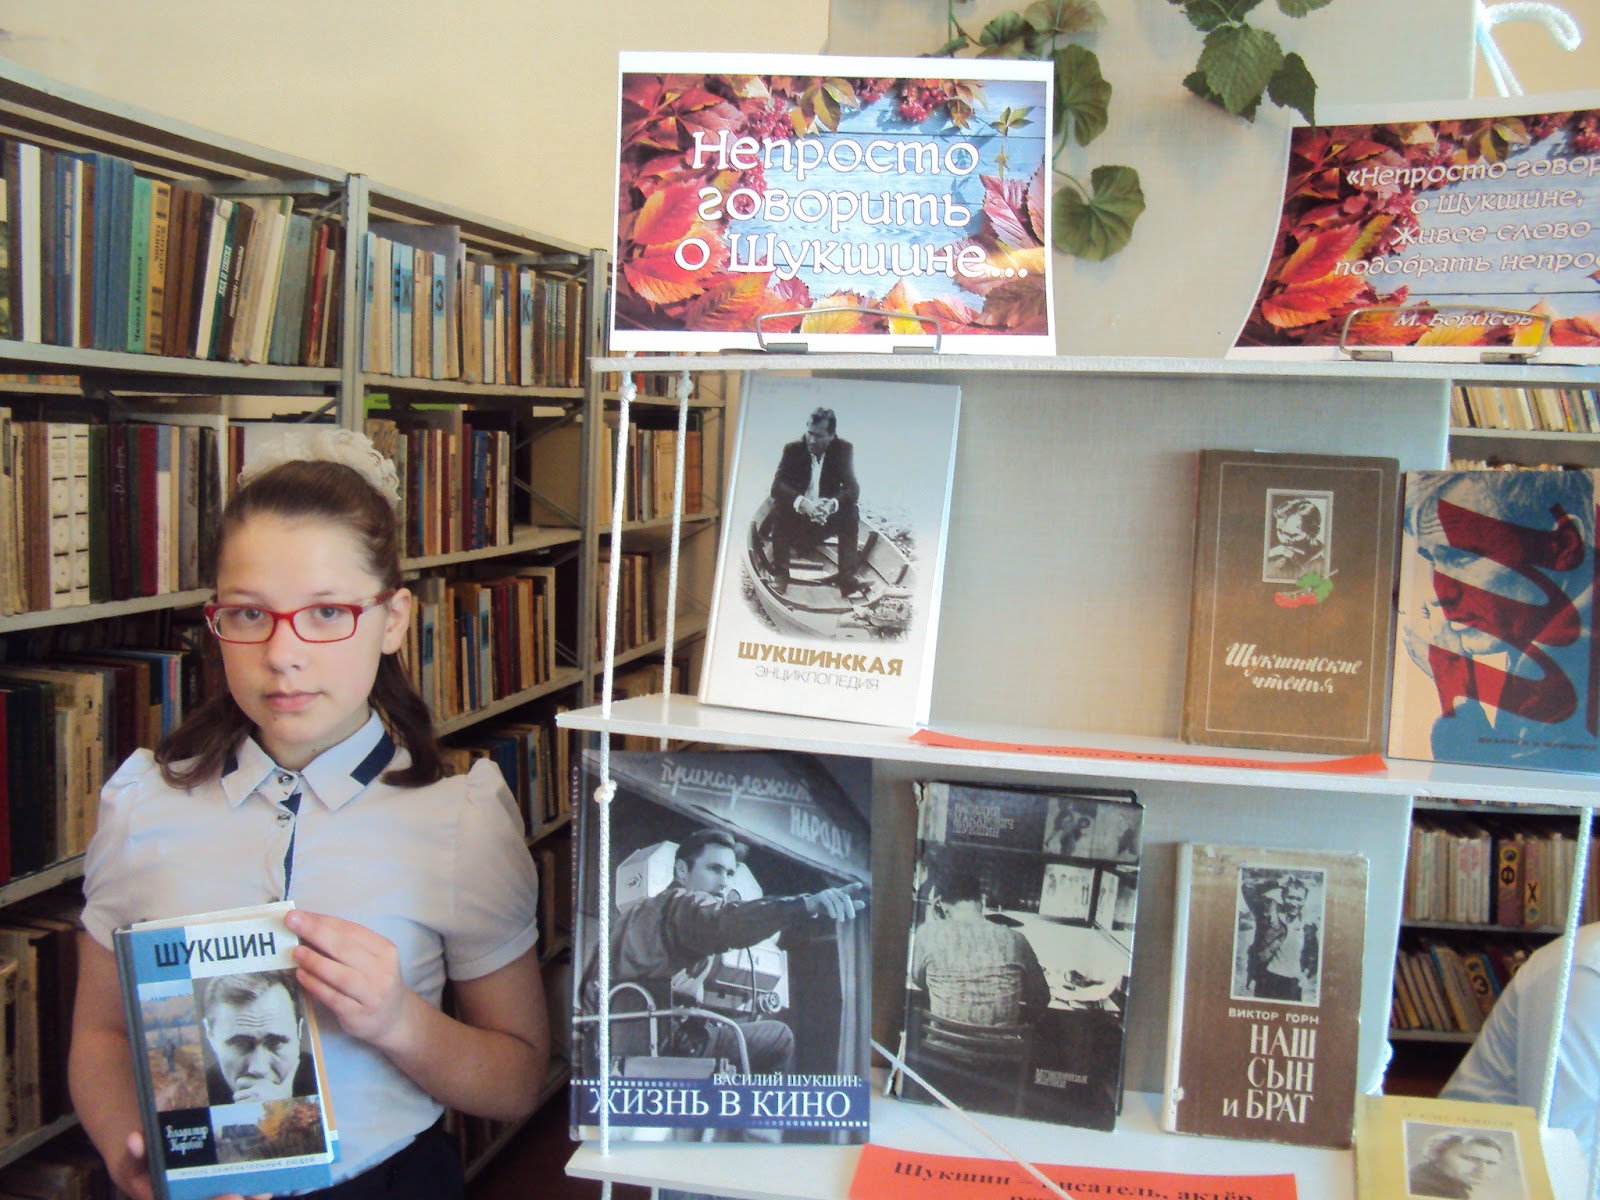 Детской библиотеке 70 лет. Библиотеке 70. Мероприятия в библиотеке к 70л. Липецкой области.